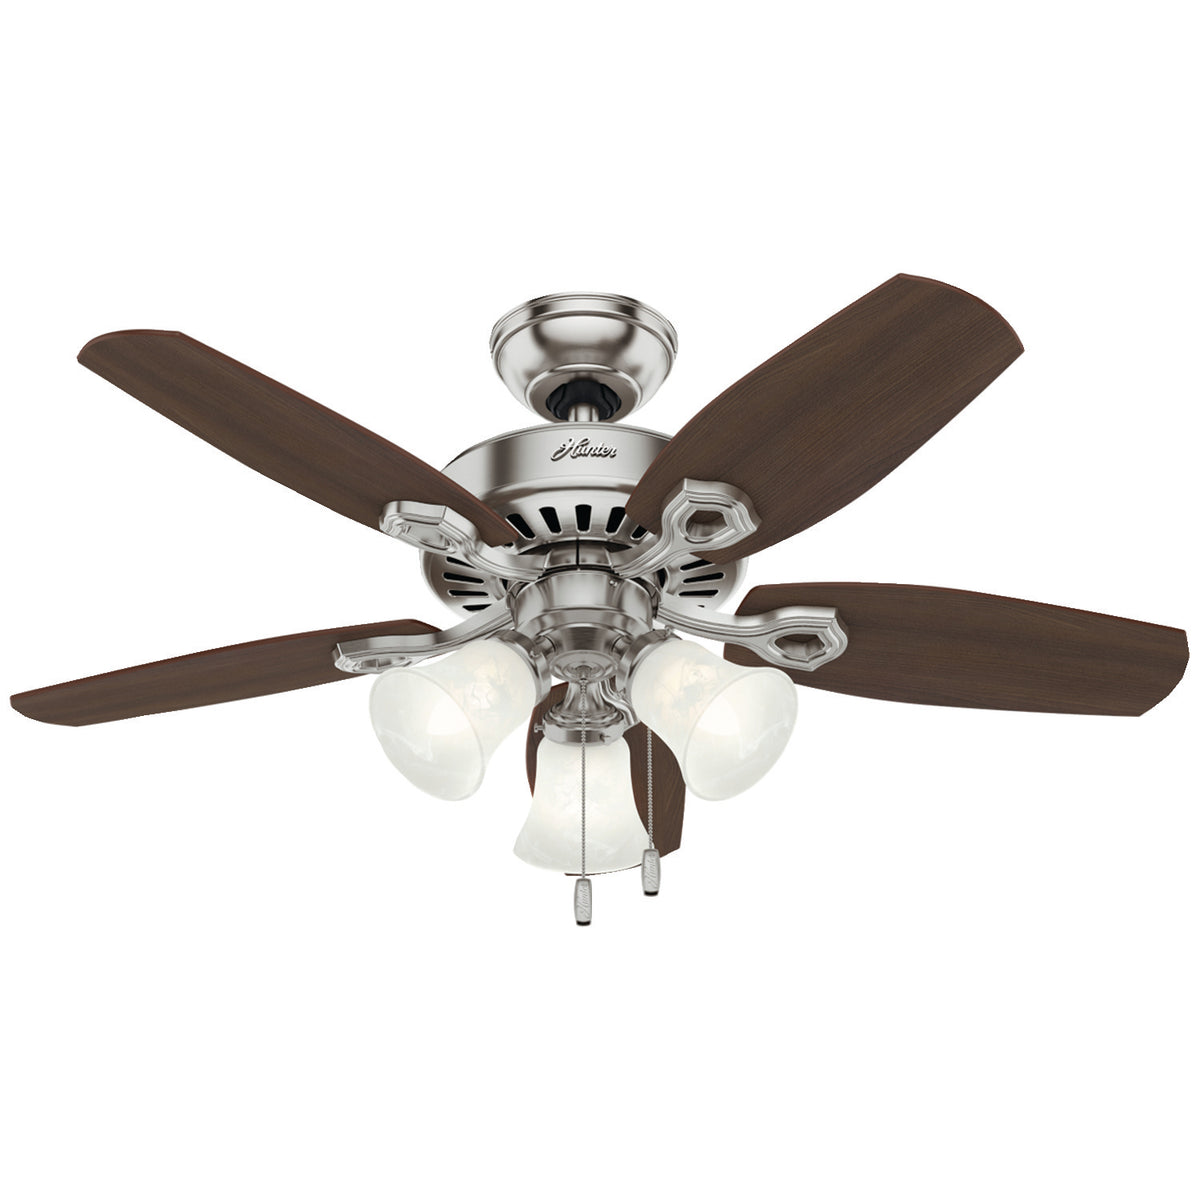 Hunter Fan 52106 Builder LED Indoor Ceiling Fan, Brushed Nickel, 42 inch